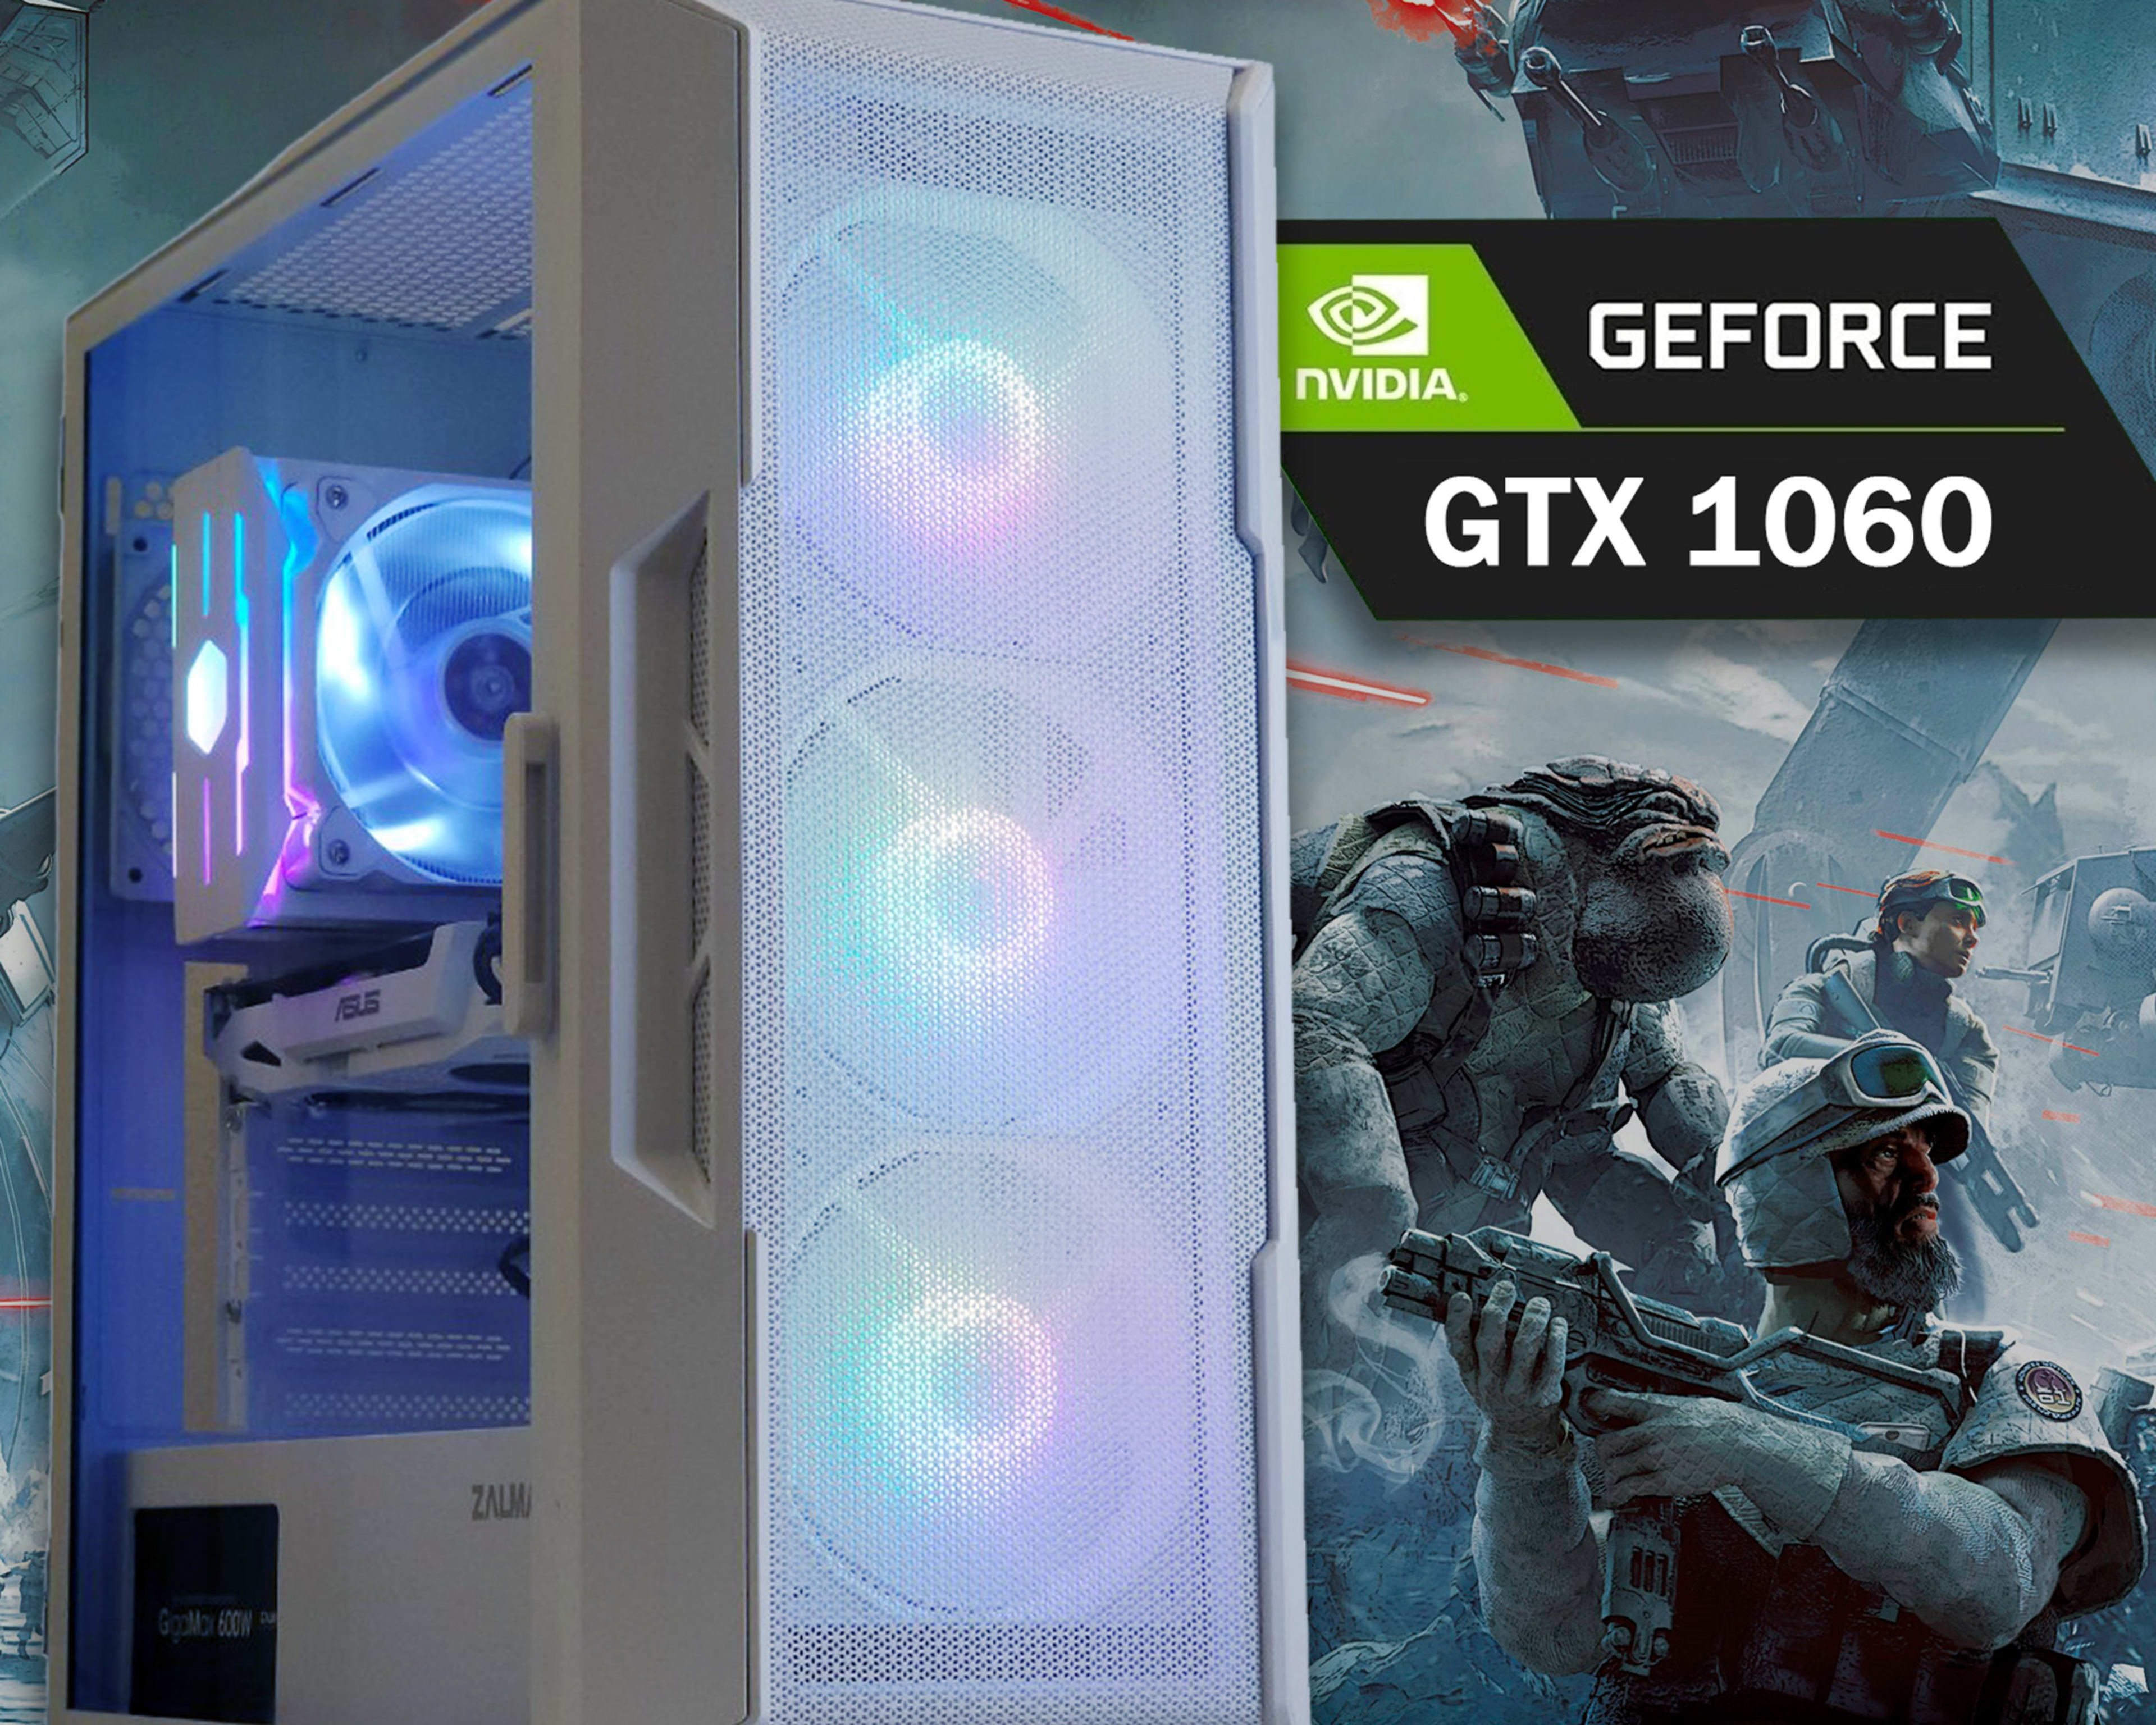 ❄️ eSports Gaming PC | GEFORCE GTX 1060, INTEL i5-9400F, 16GB RAM, 256GB M.2 SSD, WIFI & BT, WIN 10